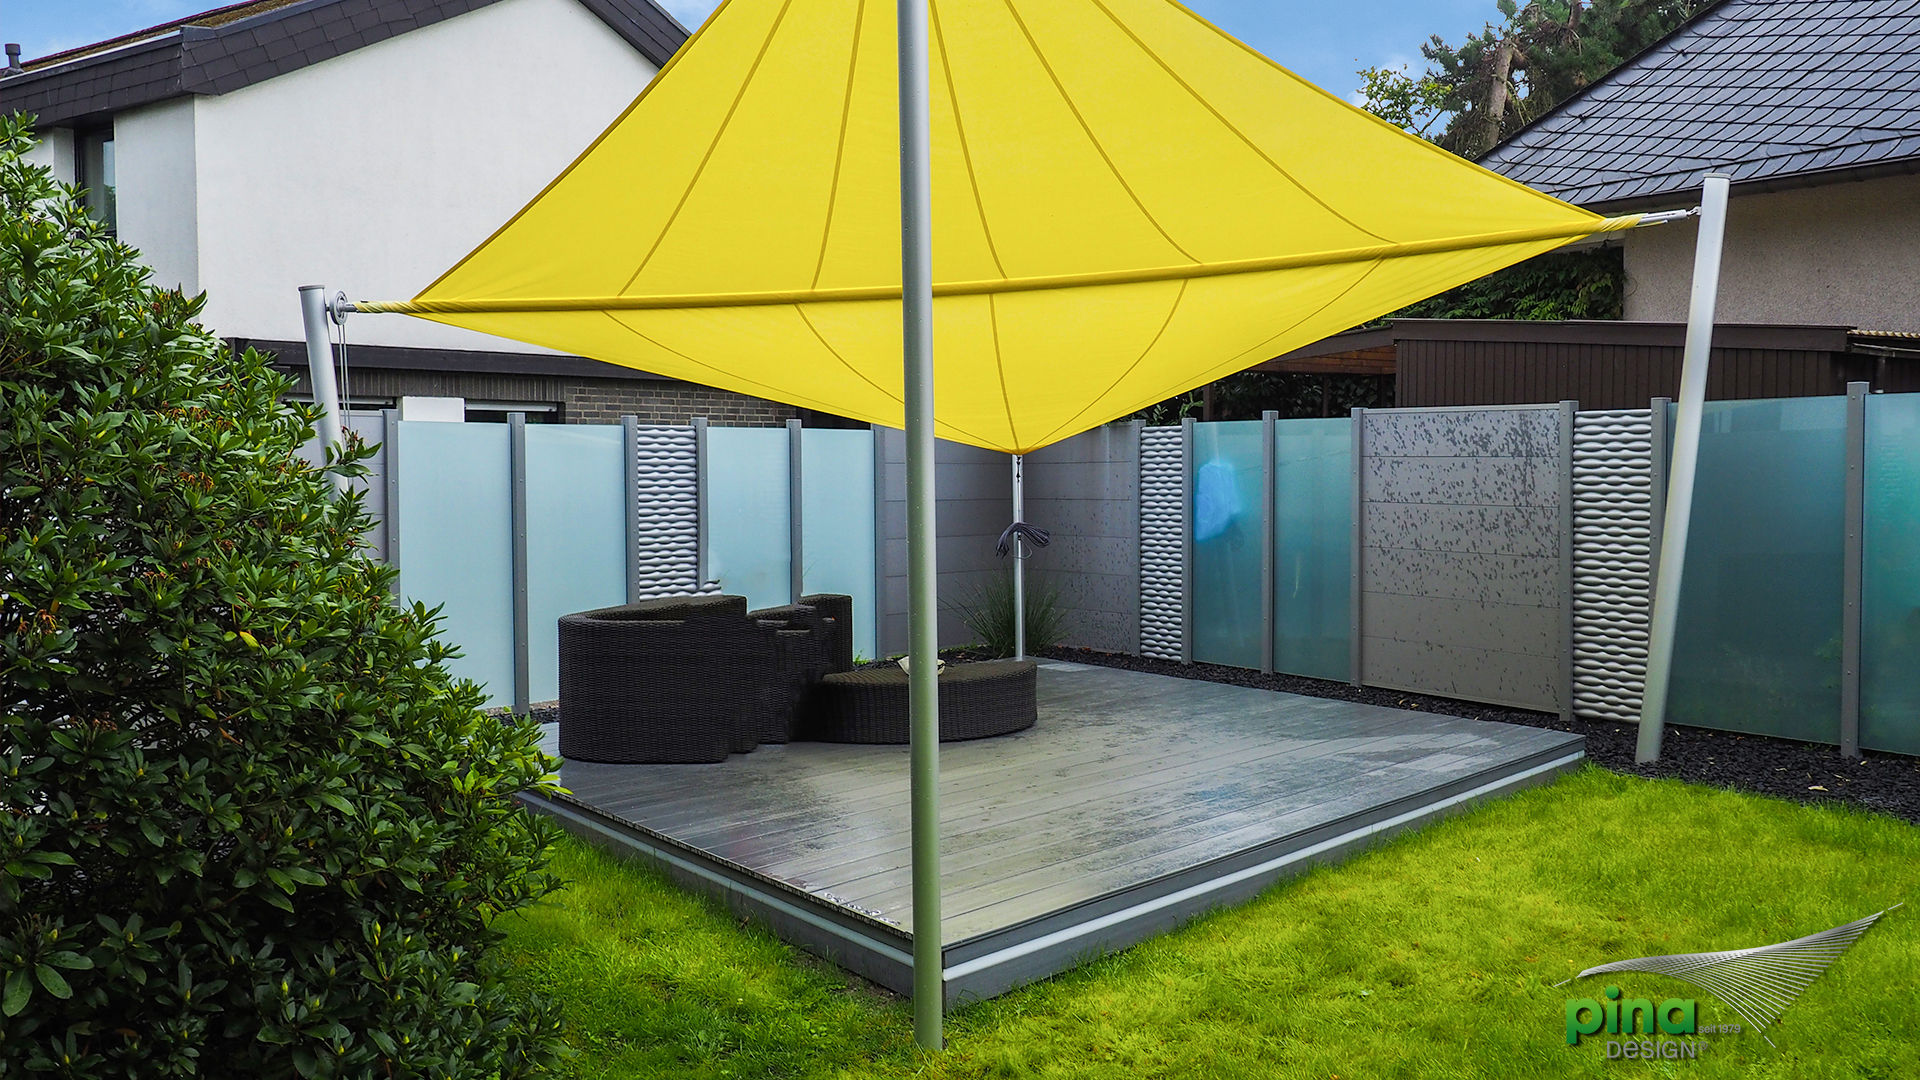 Sonnensegel in einem strahlendem Gelbton Pina GmbH - Sonnensegel Design Moderner Garten Sonnensegel,Garten,Schatten,Beschattung